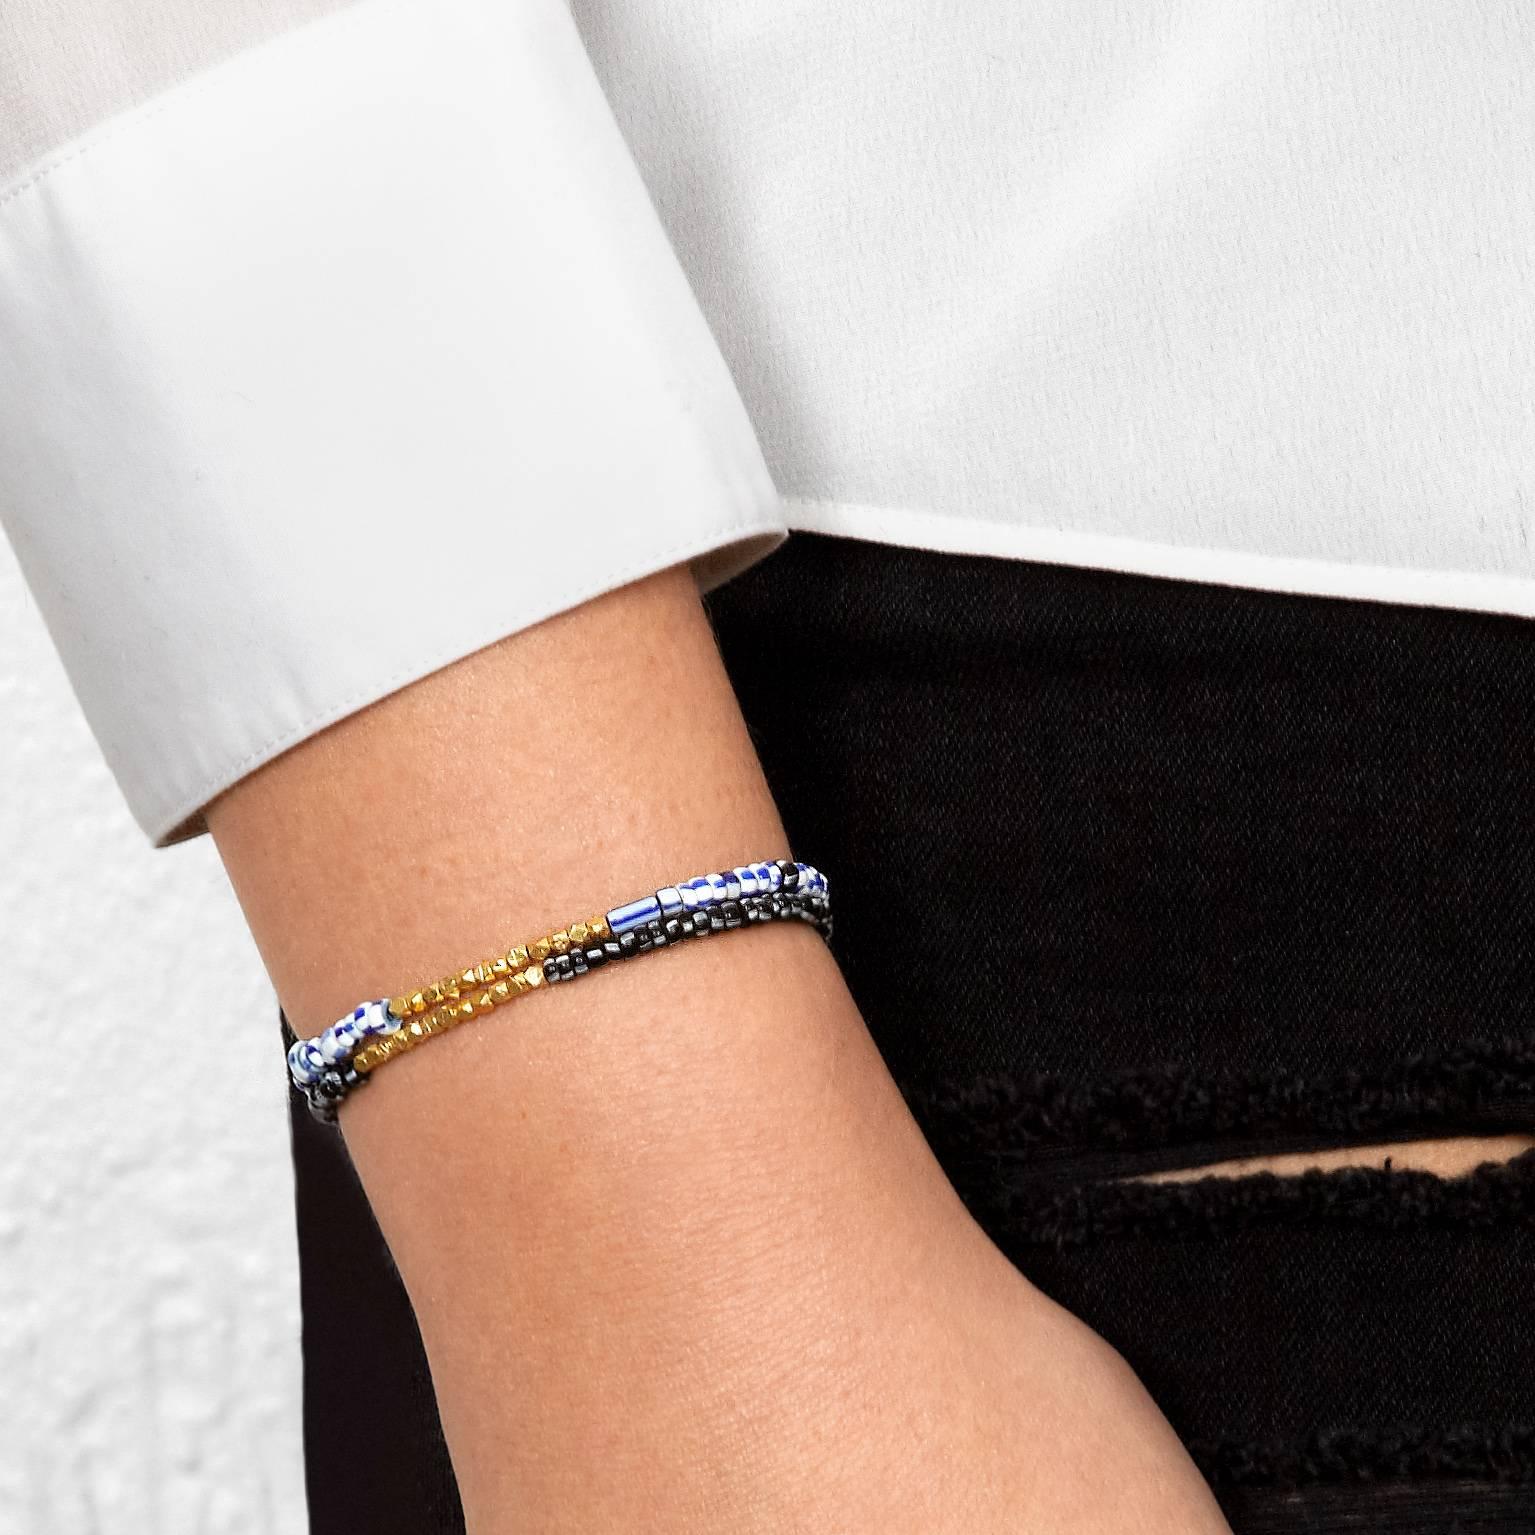 Dieses Armband besteht aus antiken blauen und weißen venezianischen Glasperlen, die mit einem Zoll massiven 14-karätigen Roségoldperlen akzentuiert sind.  Die Struktur ist stark, gespannt und elastisch.

Diese antiken venezianischen Perlen wurden in